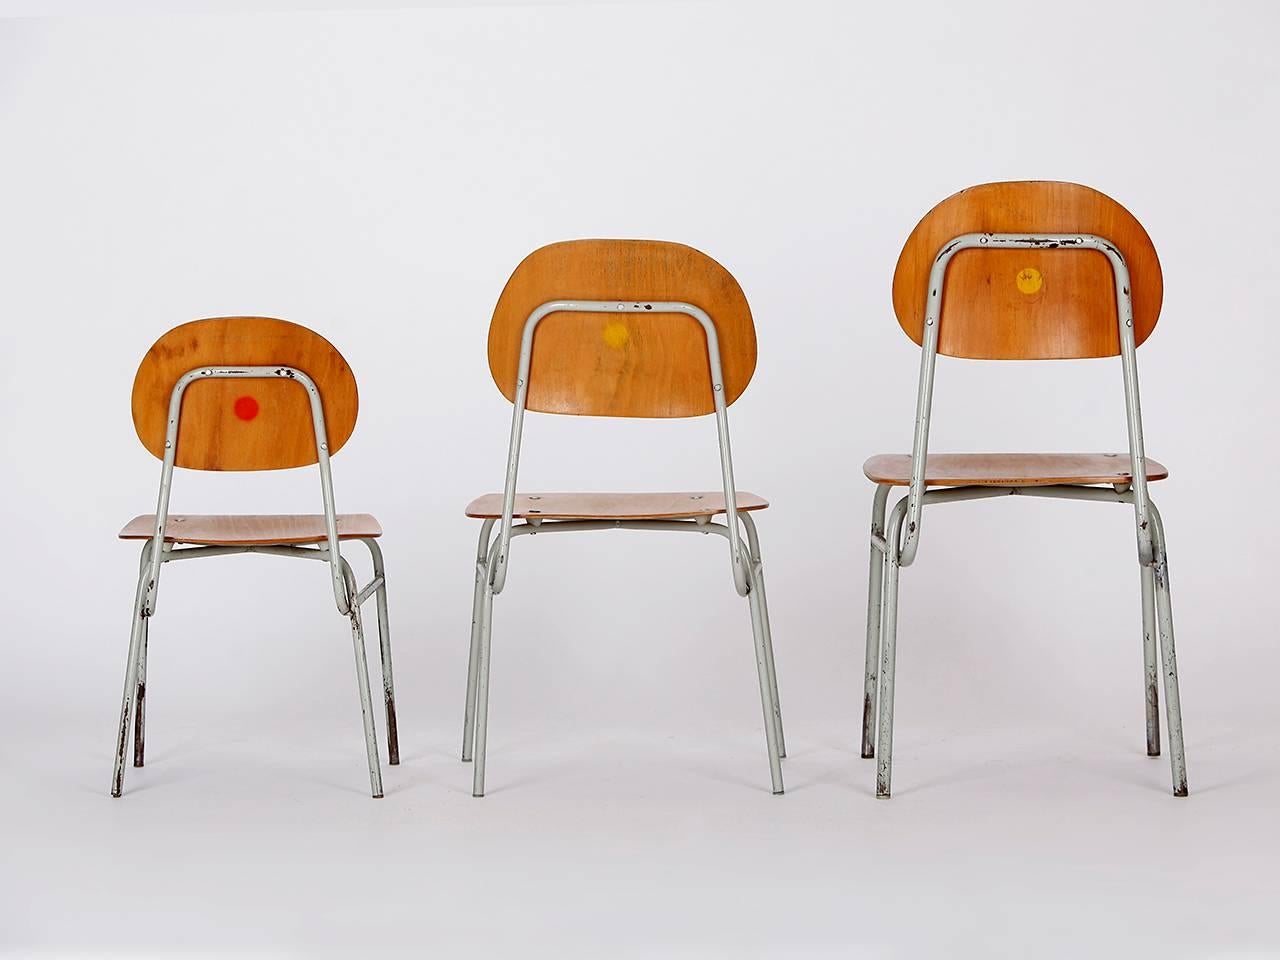 Die Stühle kommen aus einer tschechischen Grundschule. Hergestellt in den 1960er Jahren. Hölzerne Teile wurden restauriert. Stahlrohr mit Originallackierung und Patina.
Maße: klein: Sitzhöhe 11 x H 21 x B 12 x T 11 cm
Medium: Höhe der Sitzfläche